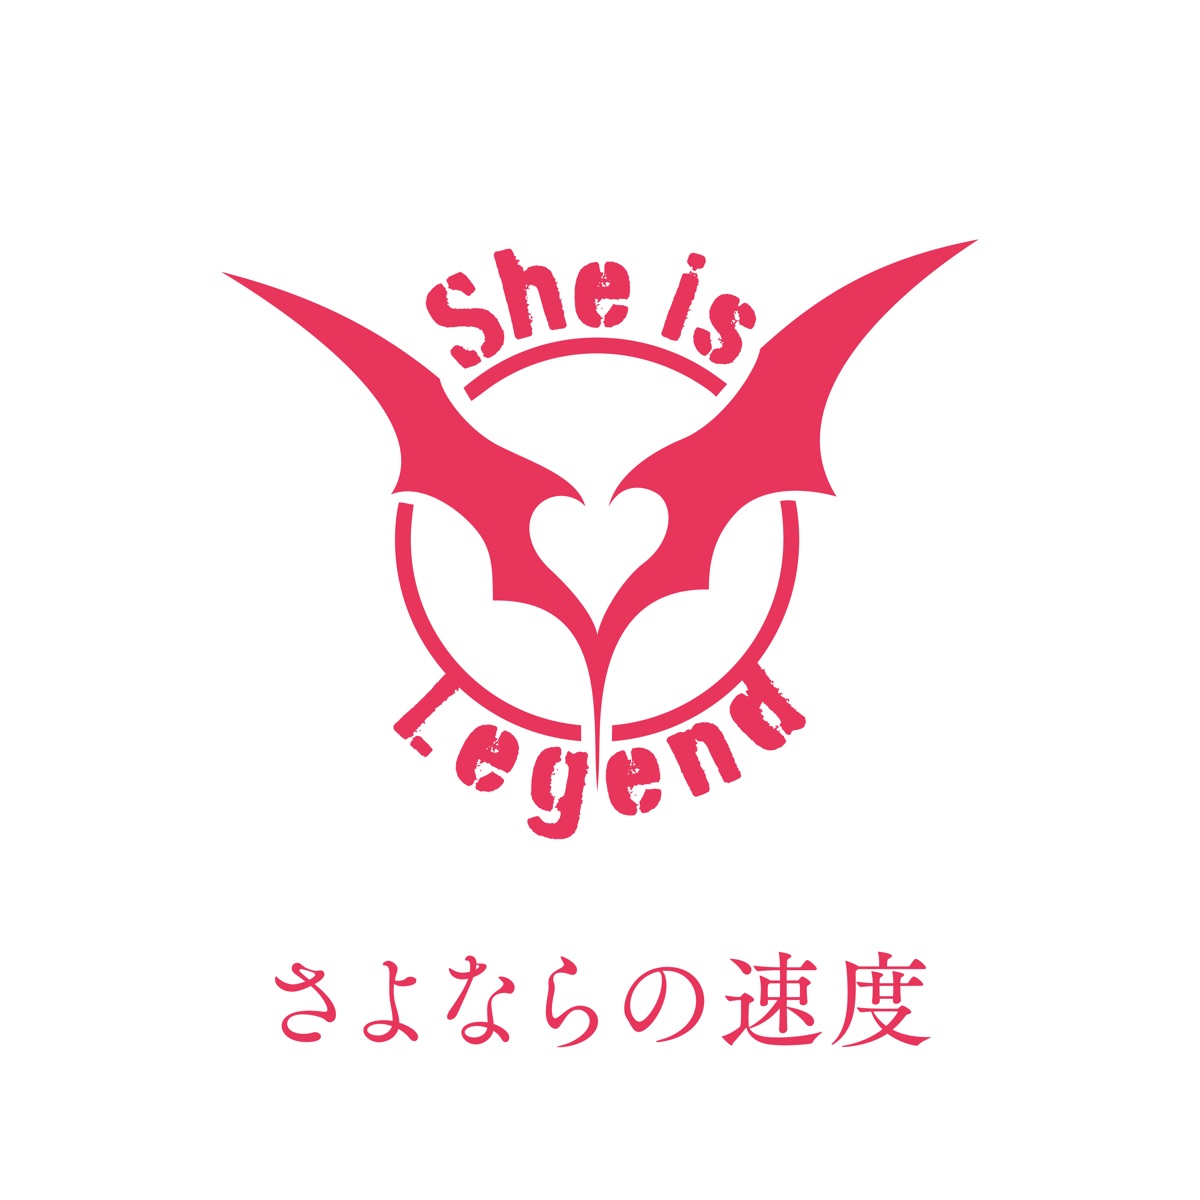 『She is Legend - さよならの速度』収録の『さよならの速度』ジャケット